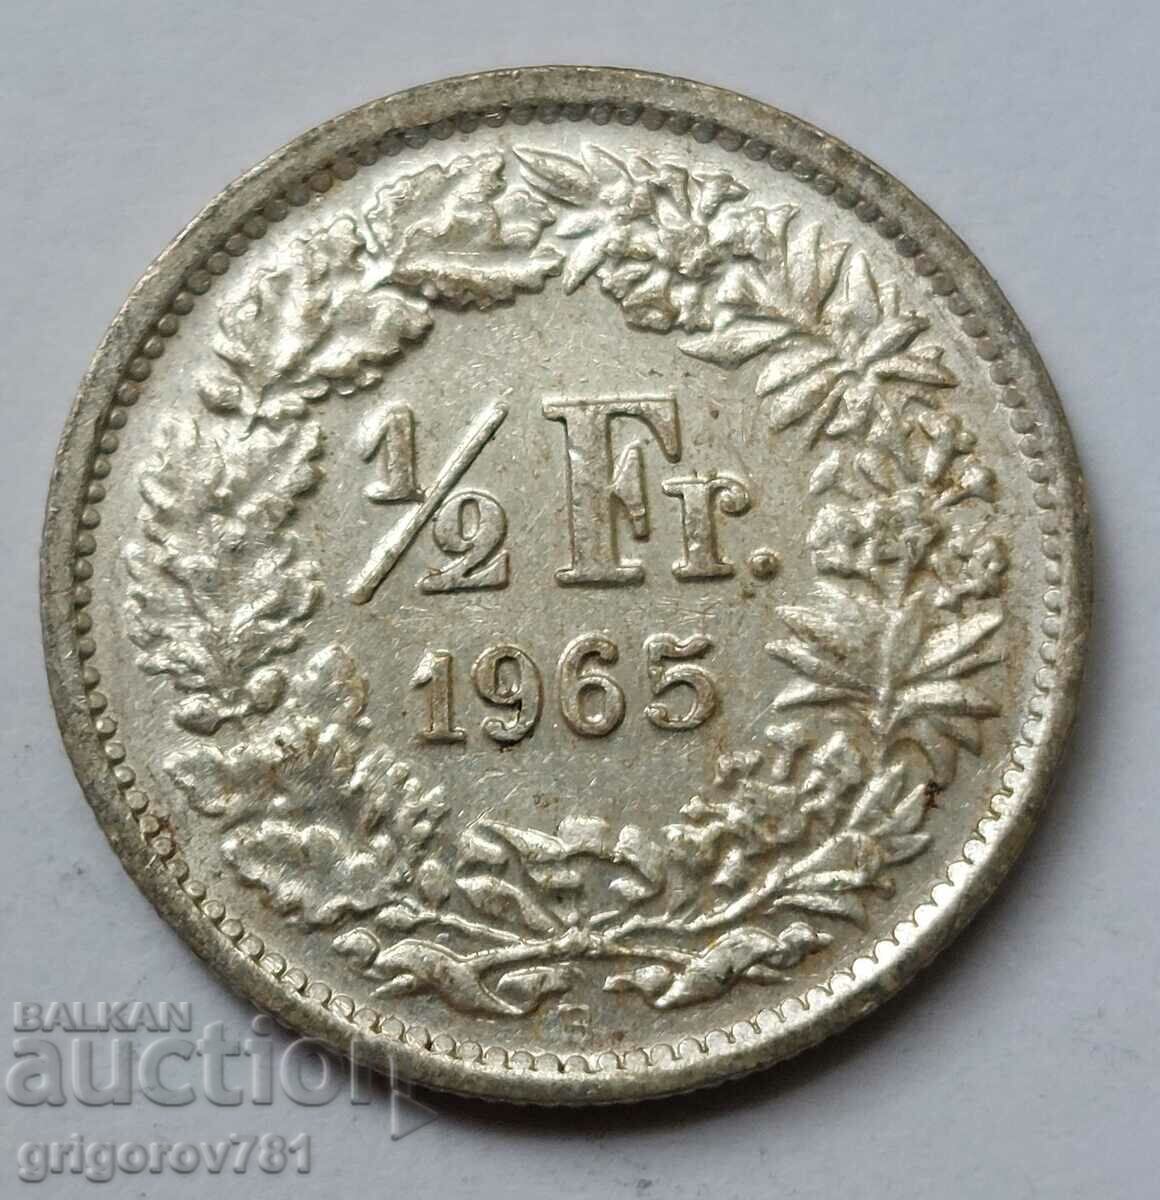 1/2 Φράγκο Ασημένιο Ελβετία 1965 Β - Ασημένιο νόμισμα #30